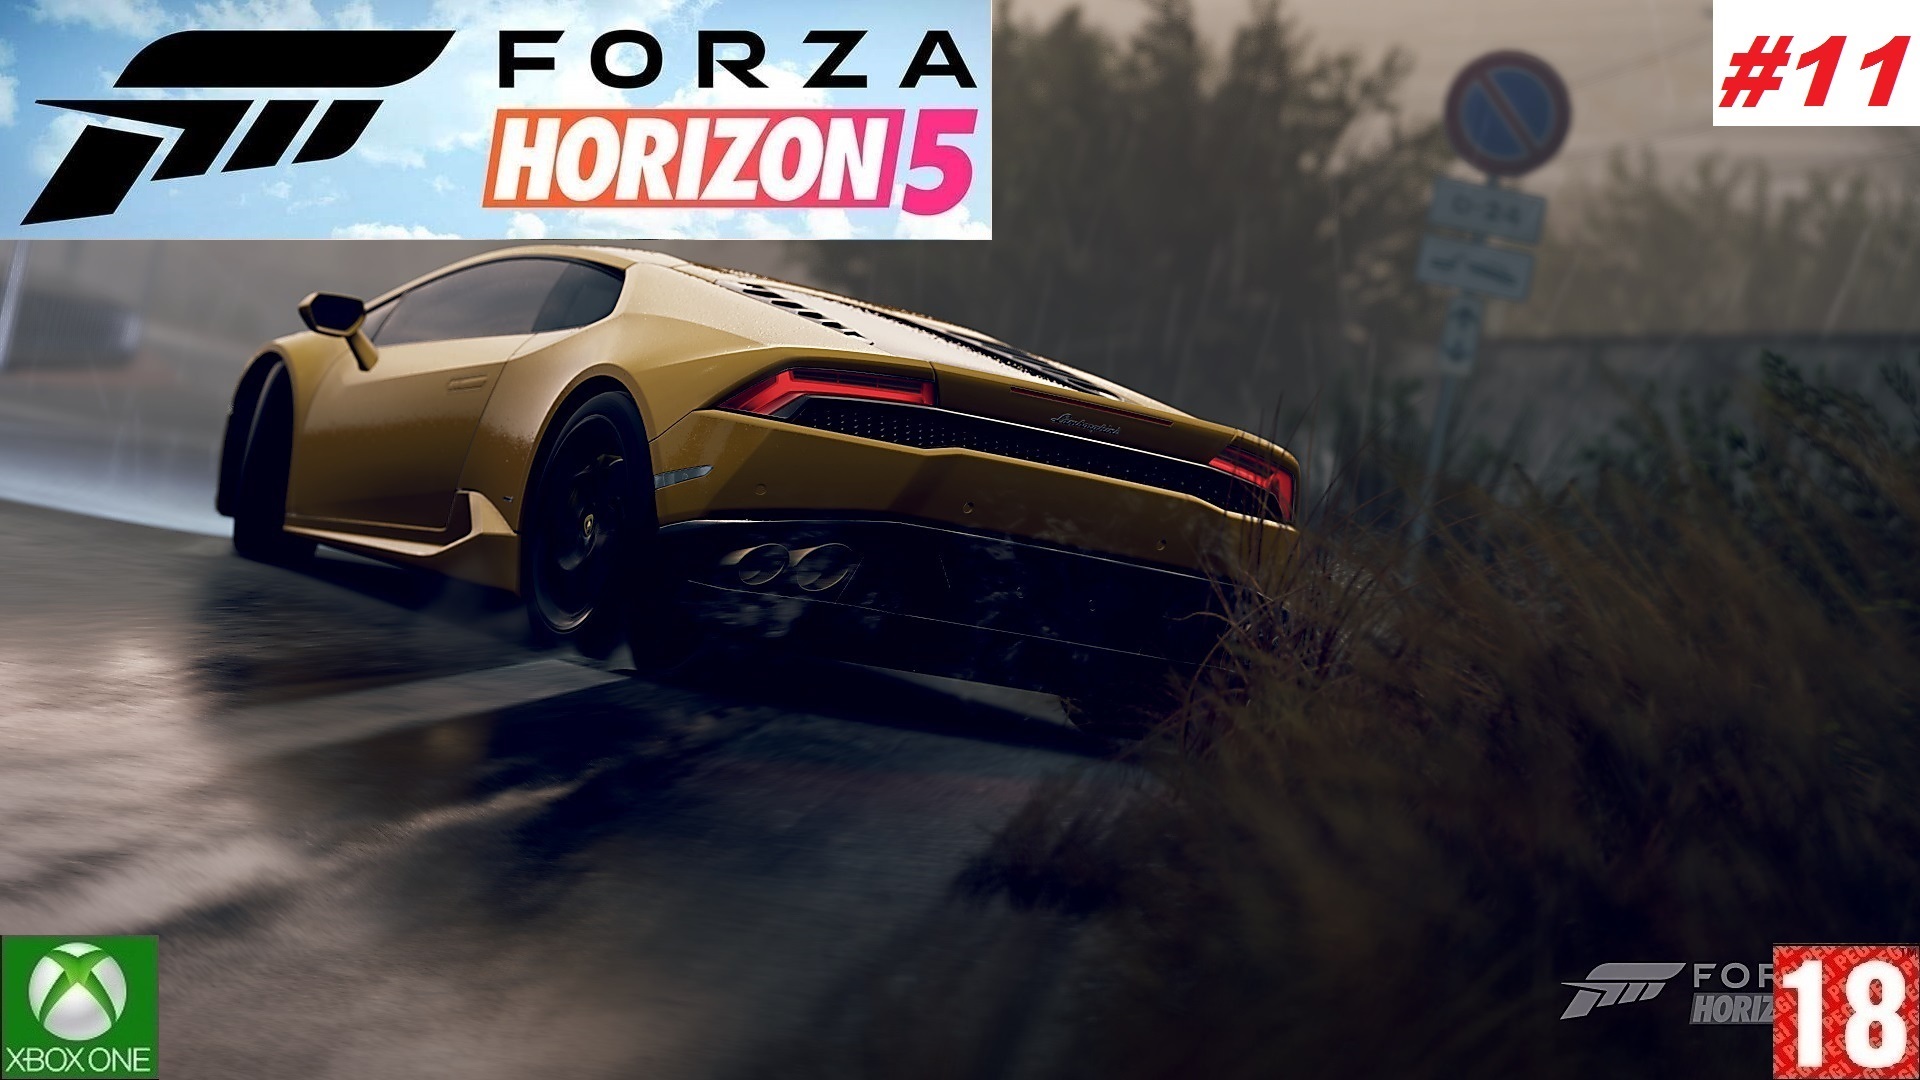 Forza Horizon 5 (Xbox One) - Прохождение - #11, Добро пожаловать в Мексику. (без комментариев)